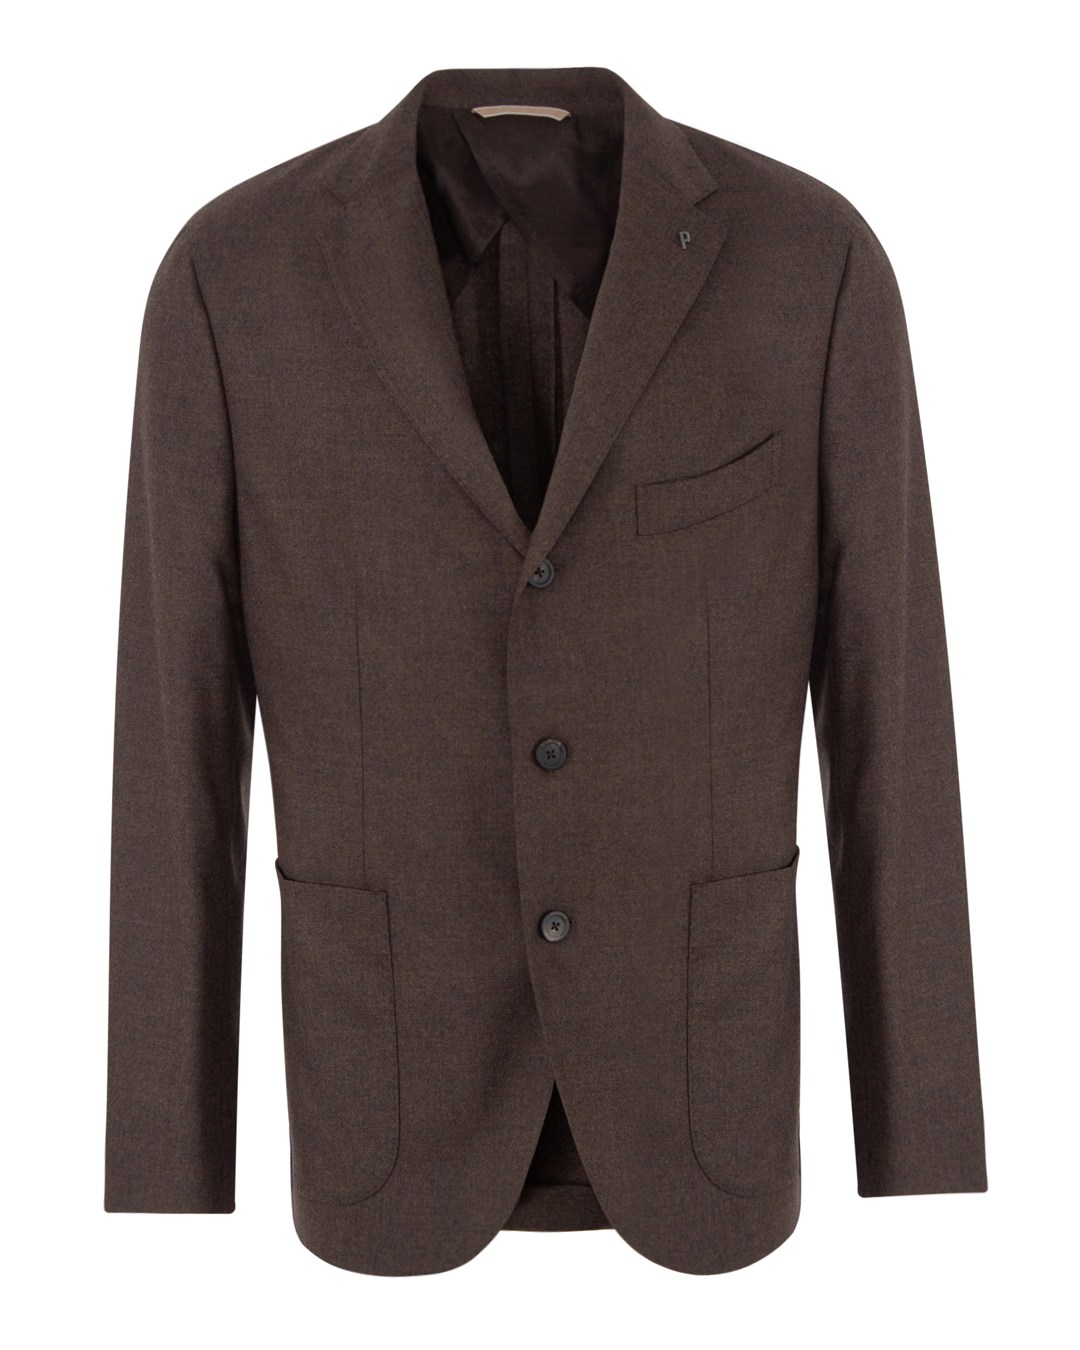 пиджак Peserico R51509 коричневый 54, размер 54 - фото 1